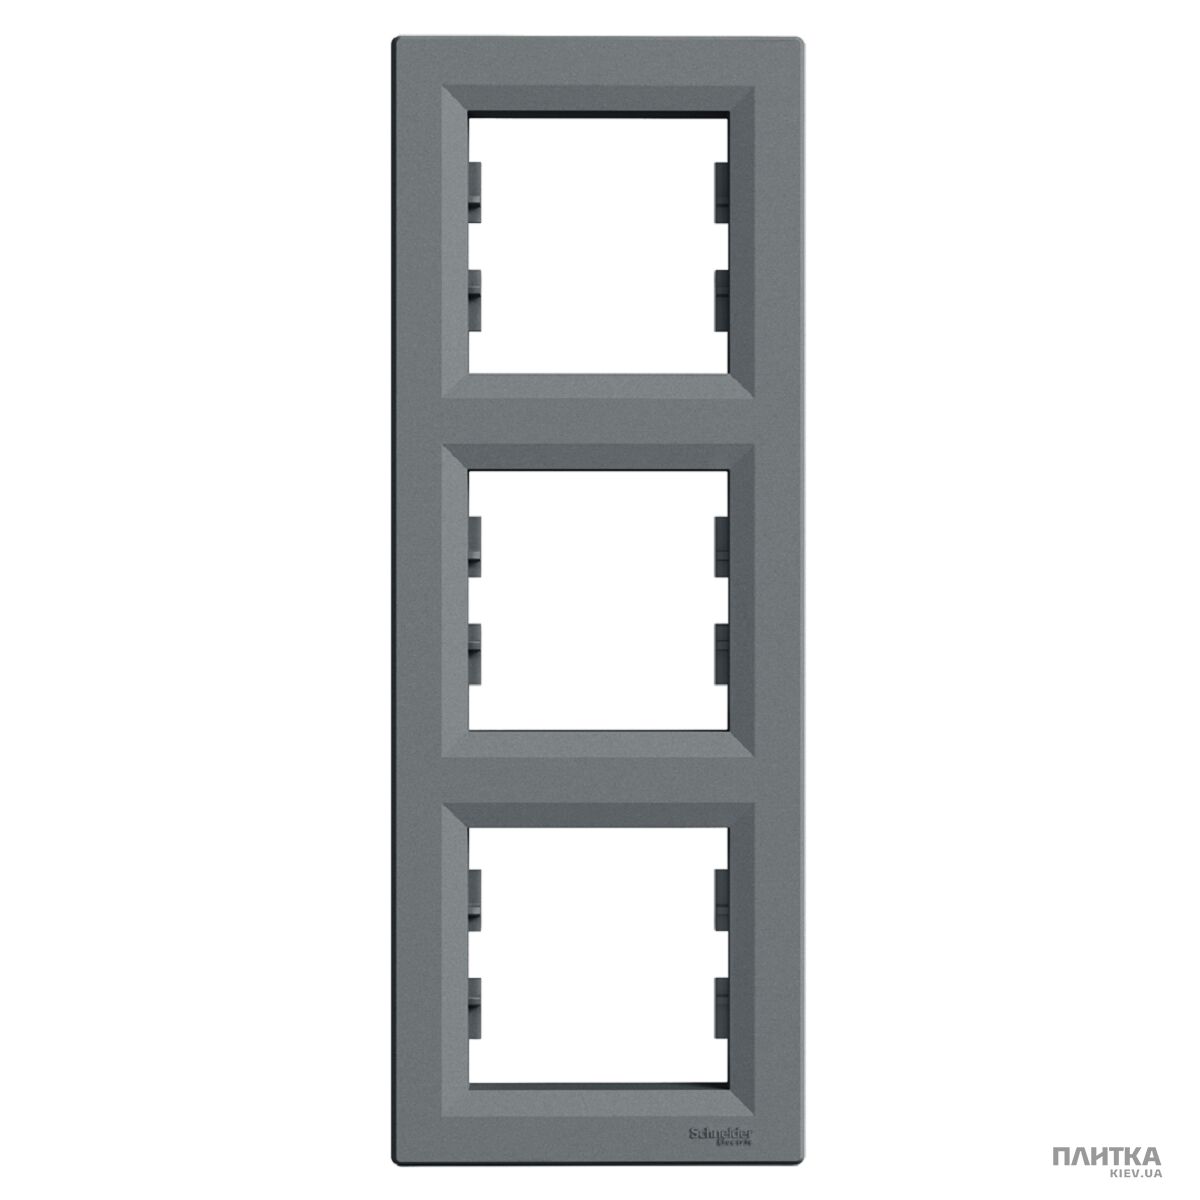 Рамка Schneider Asfora Рамка 3-постова вертикальна, сталь сталь